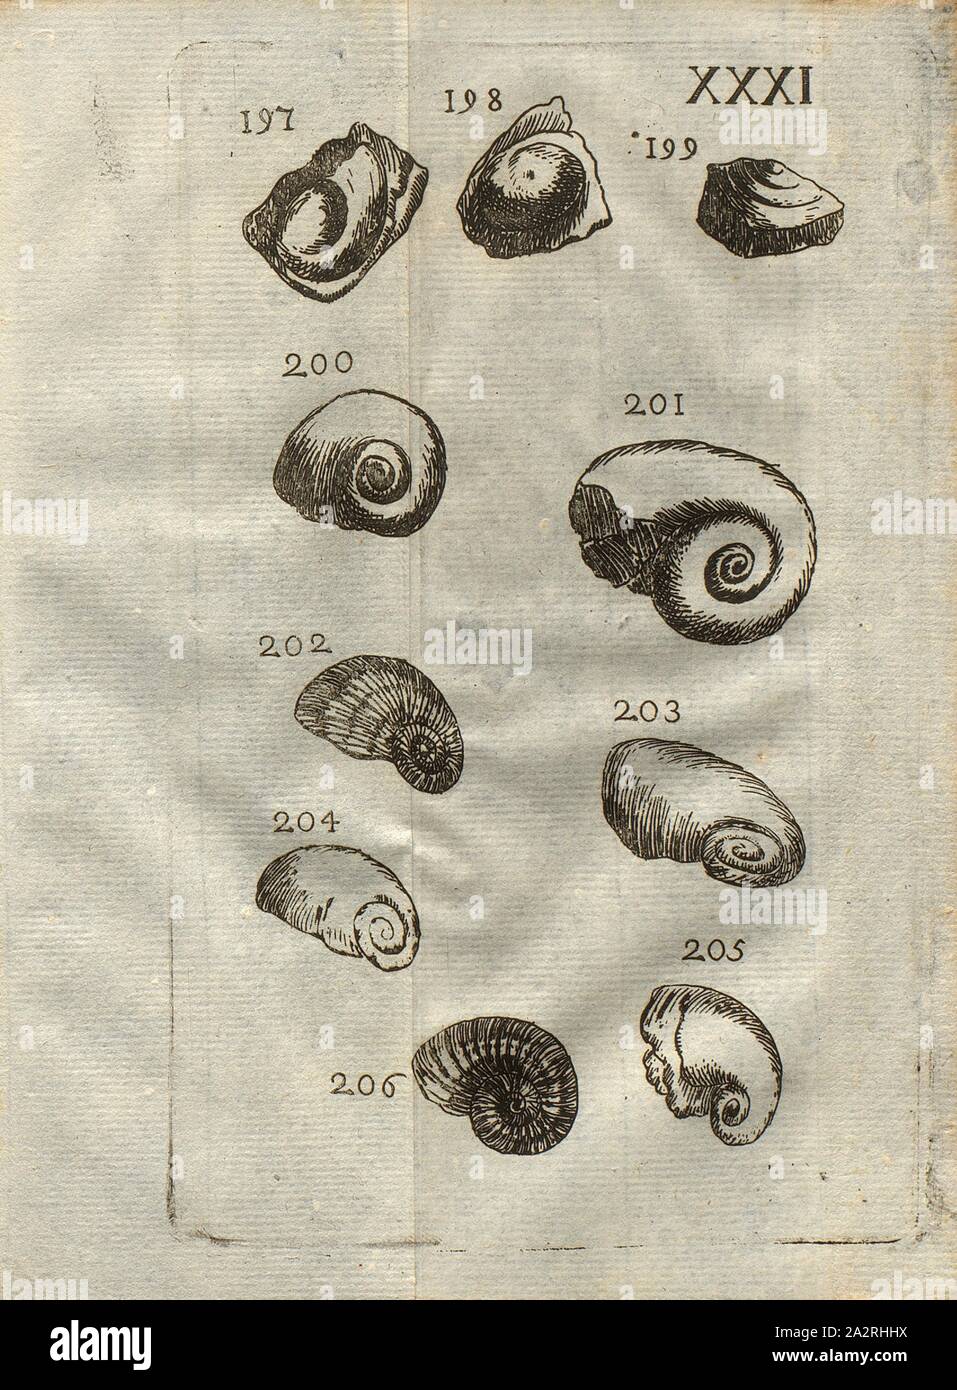 Various species of snails, Patella, Nérite, Classe III, Pl. XXXI, Fig. 197-199: Oeil de Boeuf, patella patella, vu de différentes manières, Fig. 200: Escargot de mer, Nérite appellé, Fig. 201: Nérite différent, à larges volutes, Fig. 202: Nérite rayé, 203: Nérite à grande ouverture, Fig. 204: Nérite lisse, Fig. 205: Nérite différente lisse, Fig. 206: Escargot rayé à umbilic, pl. XXXI, after p. 312, 1778, Louis Bourget: Traité des pétrifications. Paris: Jombert, 1778 Stock Photo